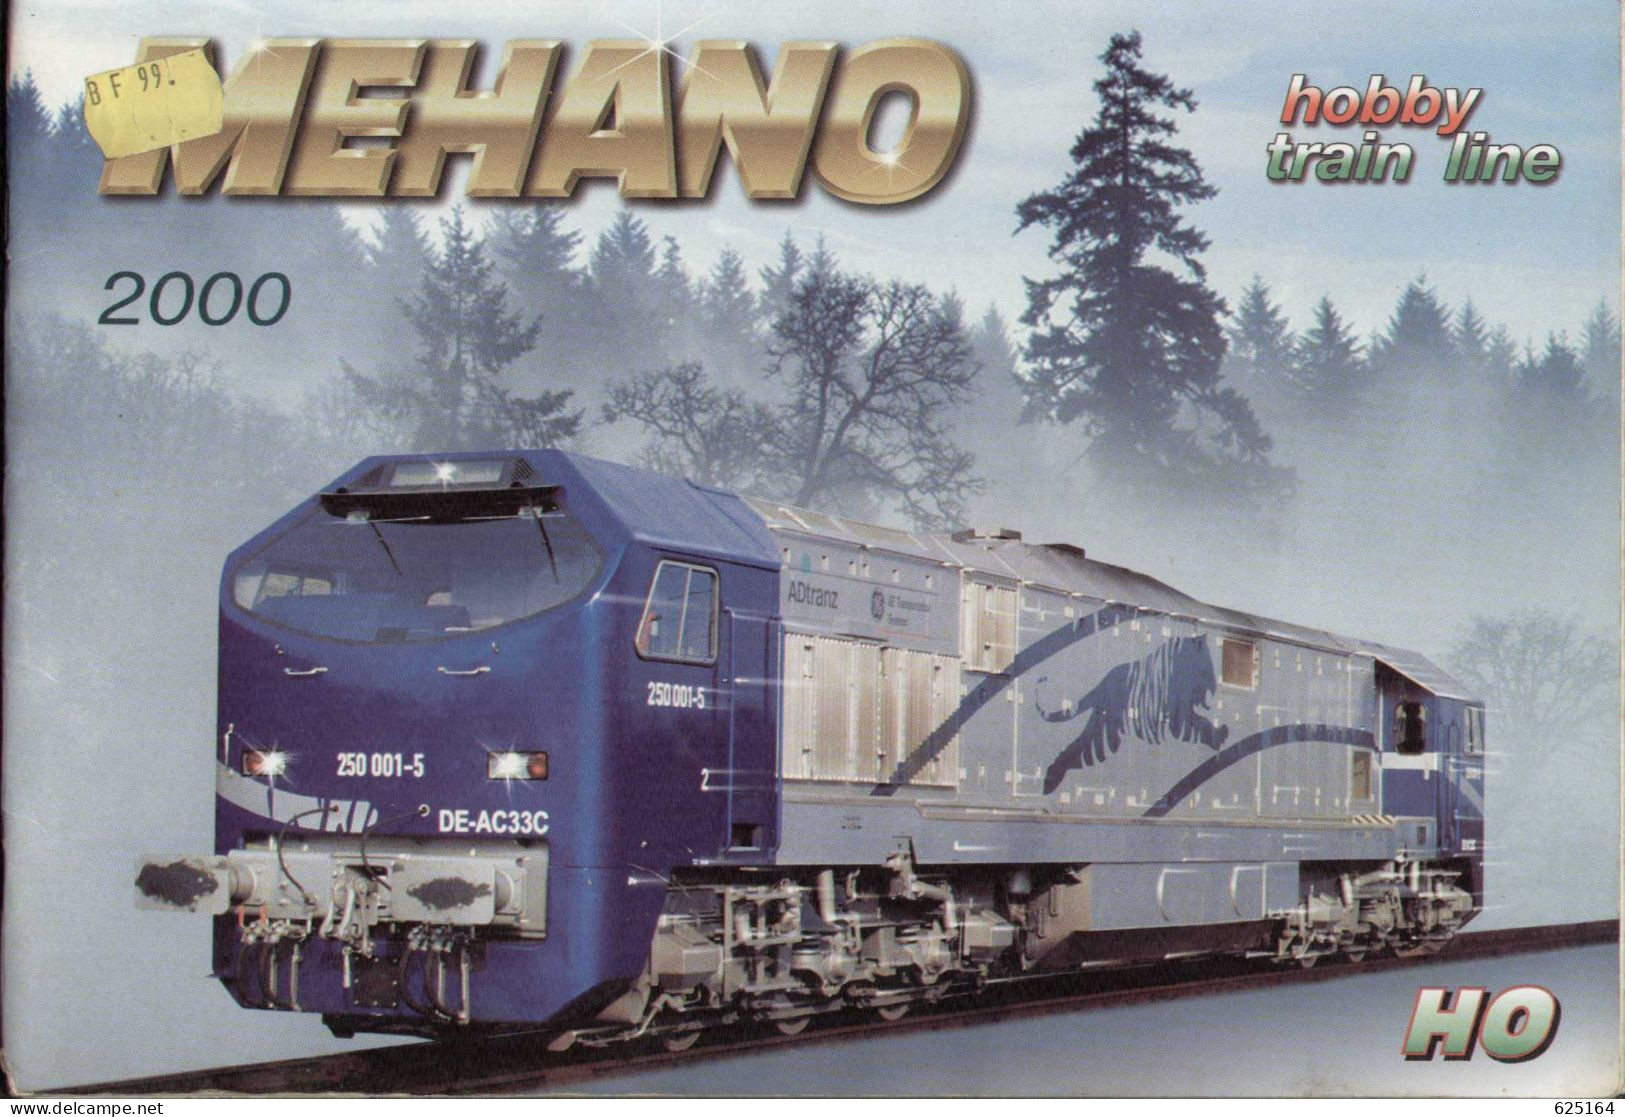 Catalogue MEHANO 2000 HO 1/87 -  Hobby - Train Line - En Slovène, Anglais, Allemand, Italien Et Français - Français